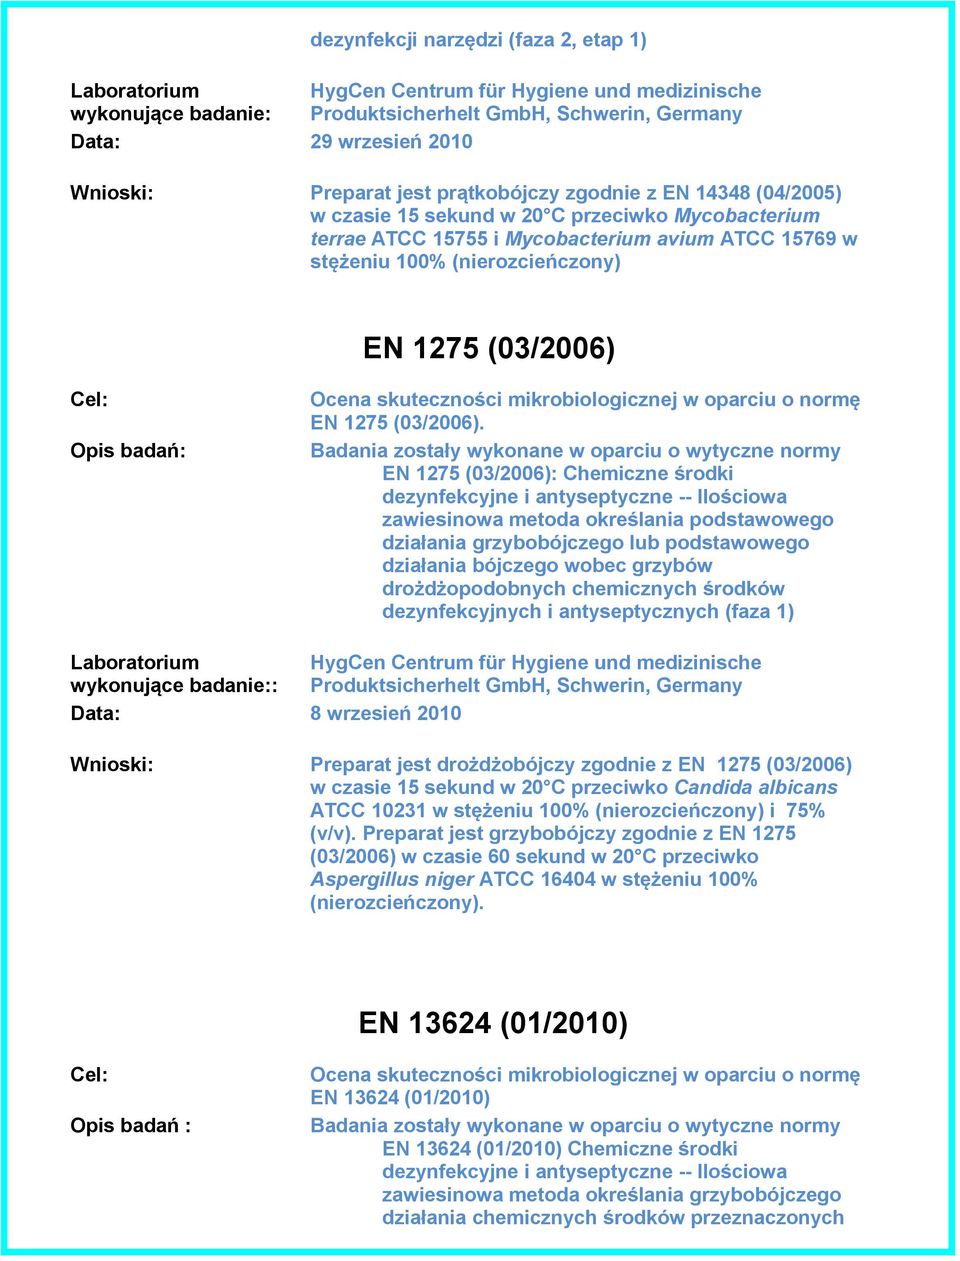 EN 1275 (03/2006): Chemiczne środki dezynfekcyjne i antyseptyczne -- Ilościowa zawiesinowa metoda określania podstawowego działania grzybobójczego lub podstawowego działania bójczego wobec grzybów